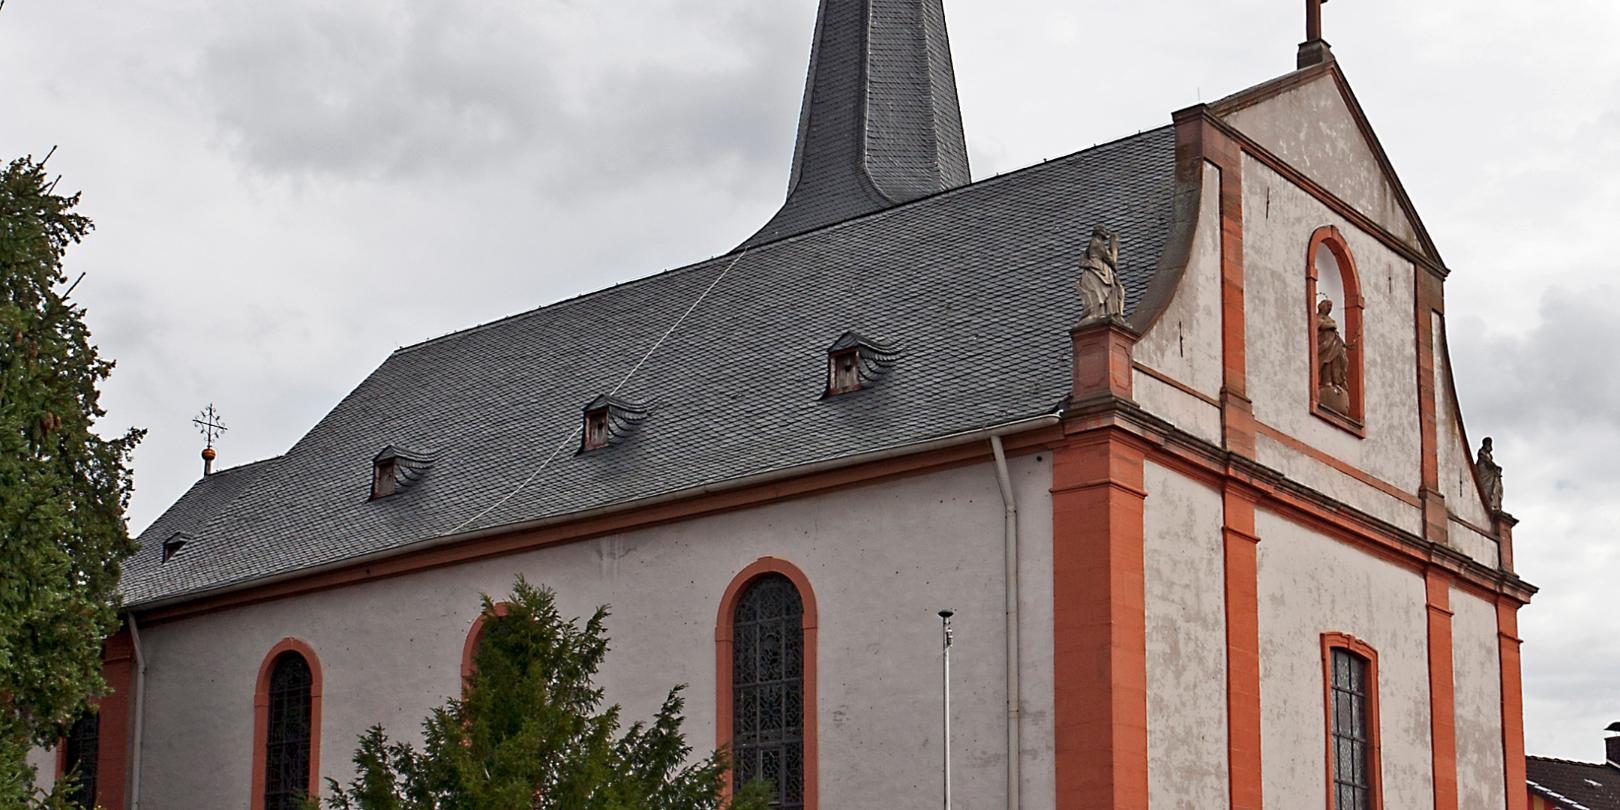 Katholische Kirche St. Peter und Paul Bingen-Dromersheim (c) Von Rudolf Stricker - Eigenes Werk, Attribution, https://commons.wikimedia.org/w/index.php?curid=11442845